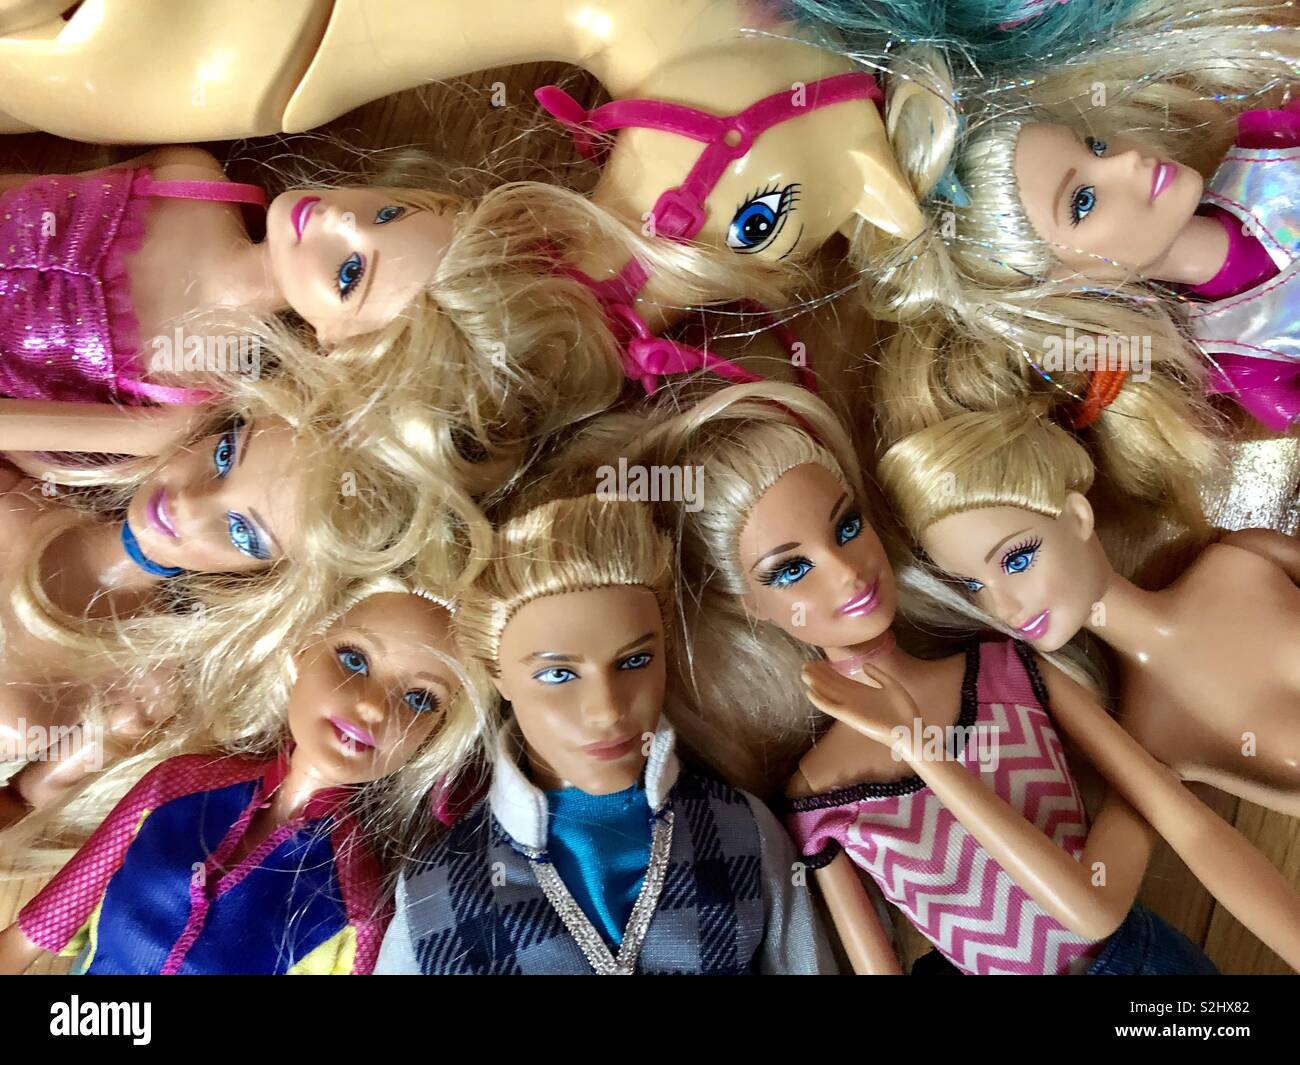 Viele Barbie Puppen mit Ken Stockfotografie - Alamy